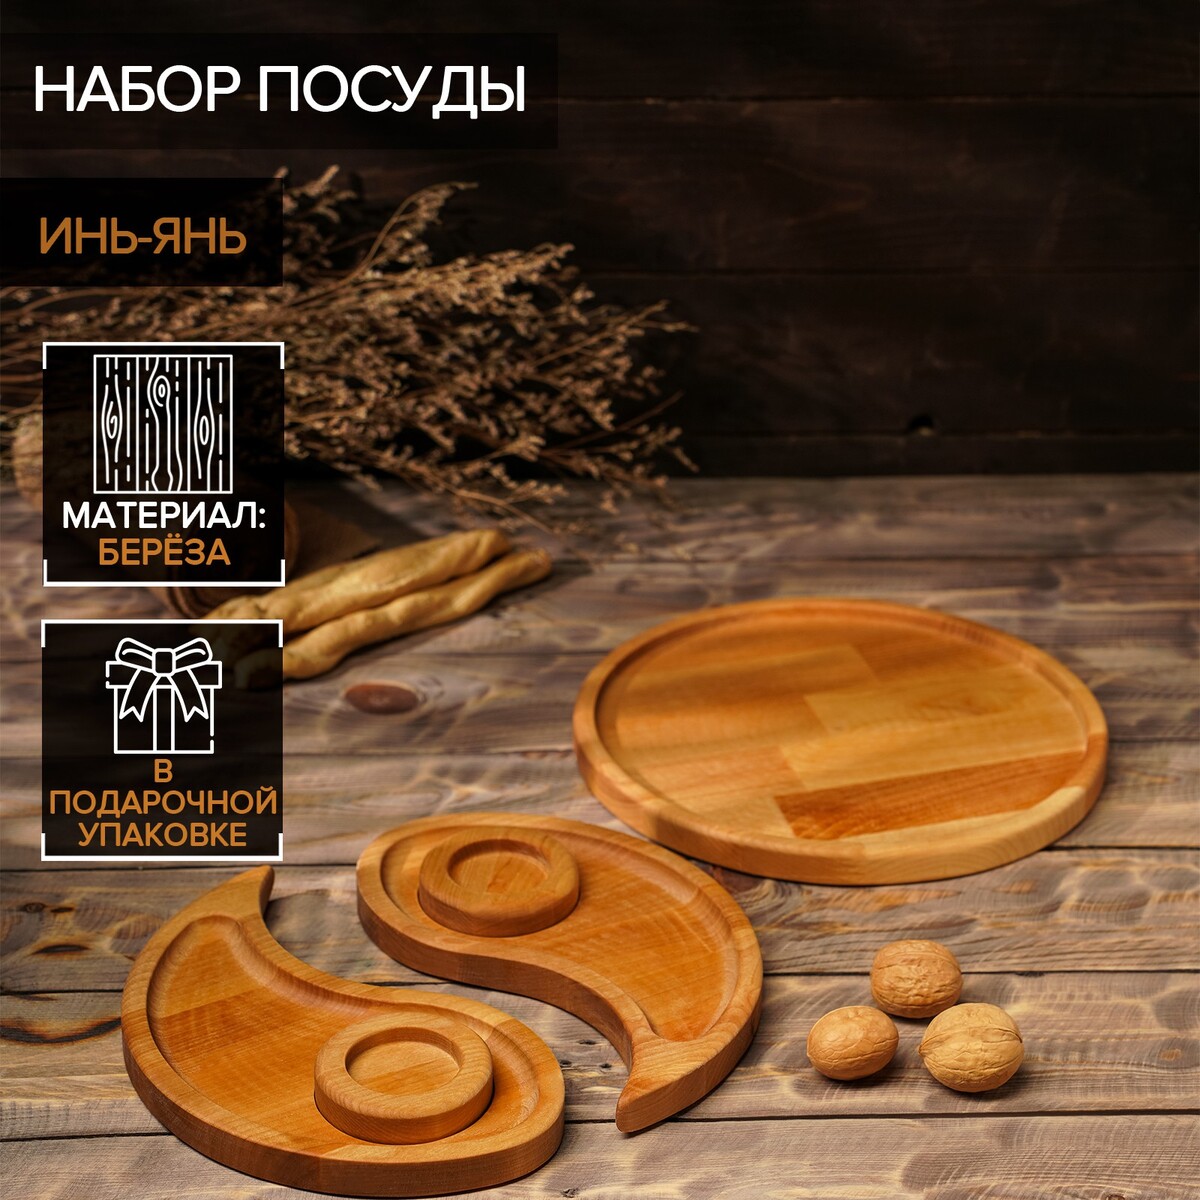 Подарочный набор деревянной посуды adelica набор для творчества master iq2 горячие штучки